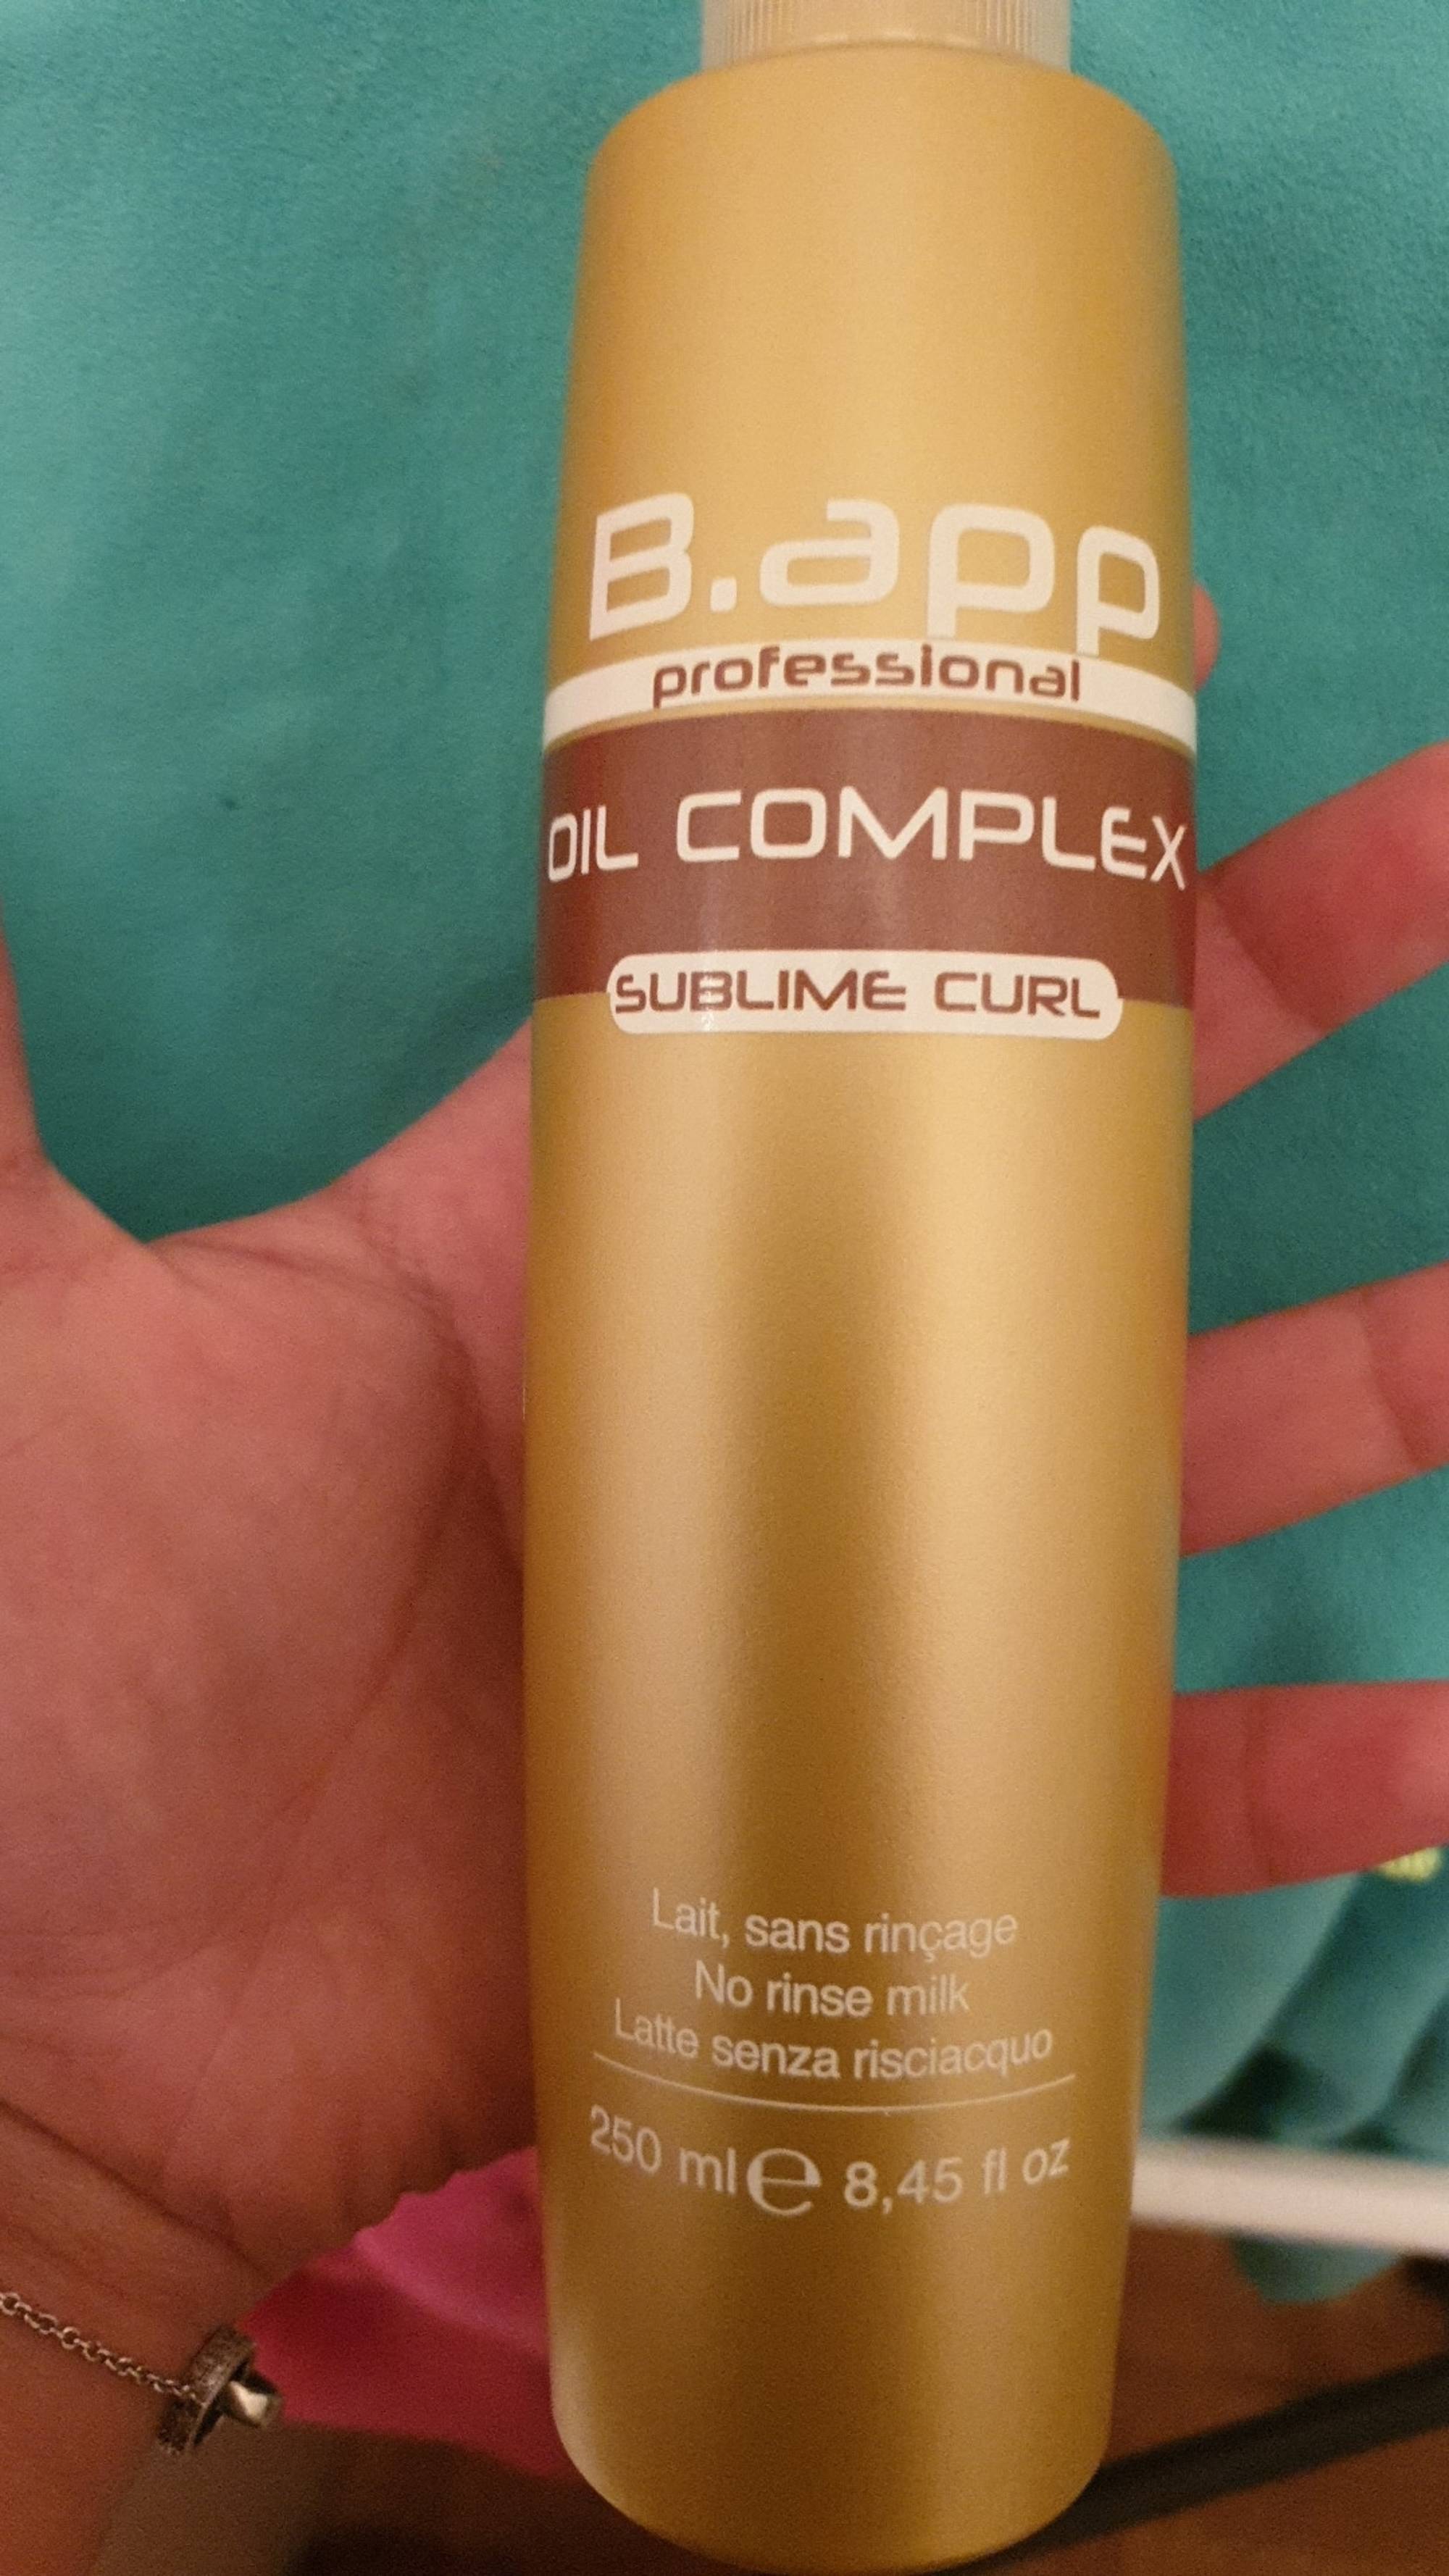 B.APP PROFESSIONAL - Oil complex Sublime curl - Lait sans rinçage